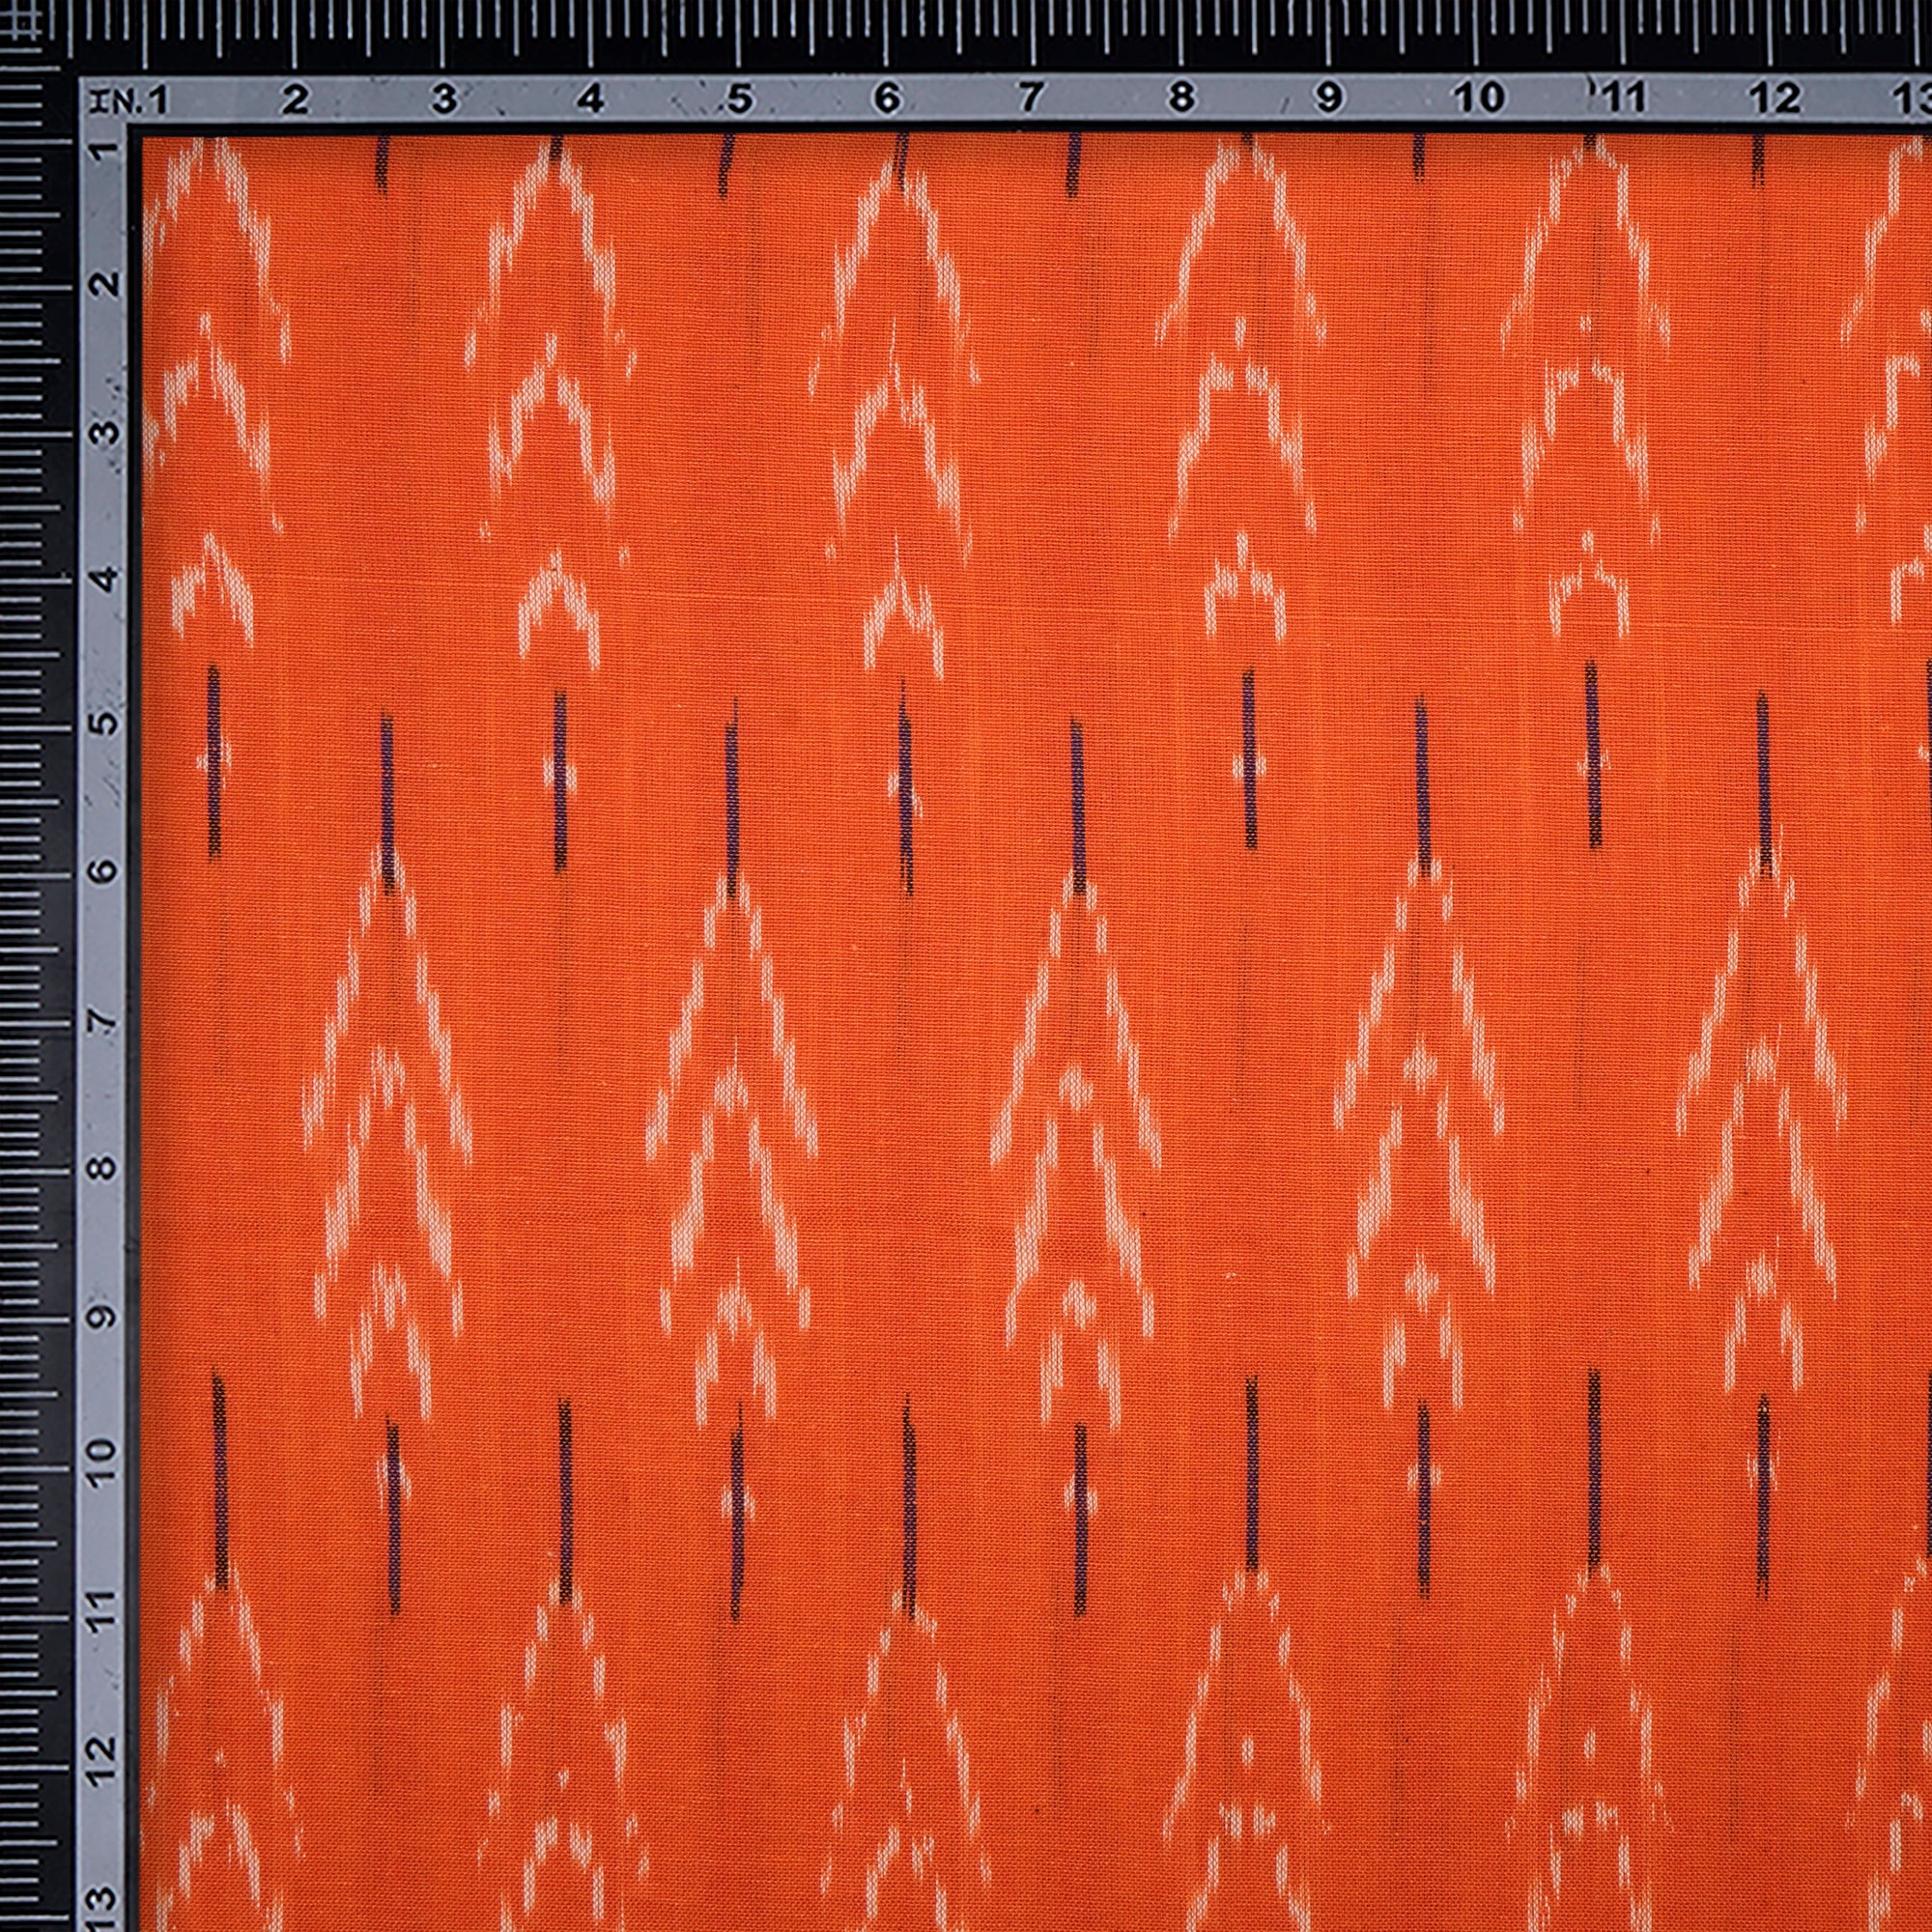 Orange Washed Woven Ikat Cotton Fabric